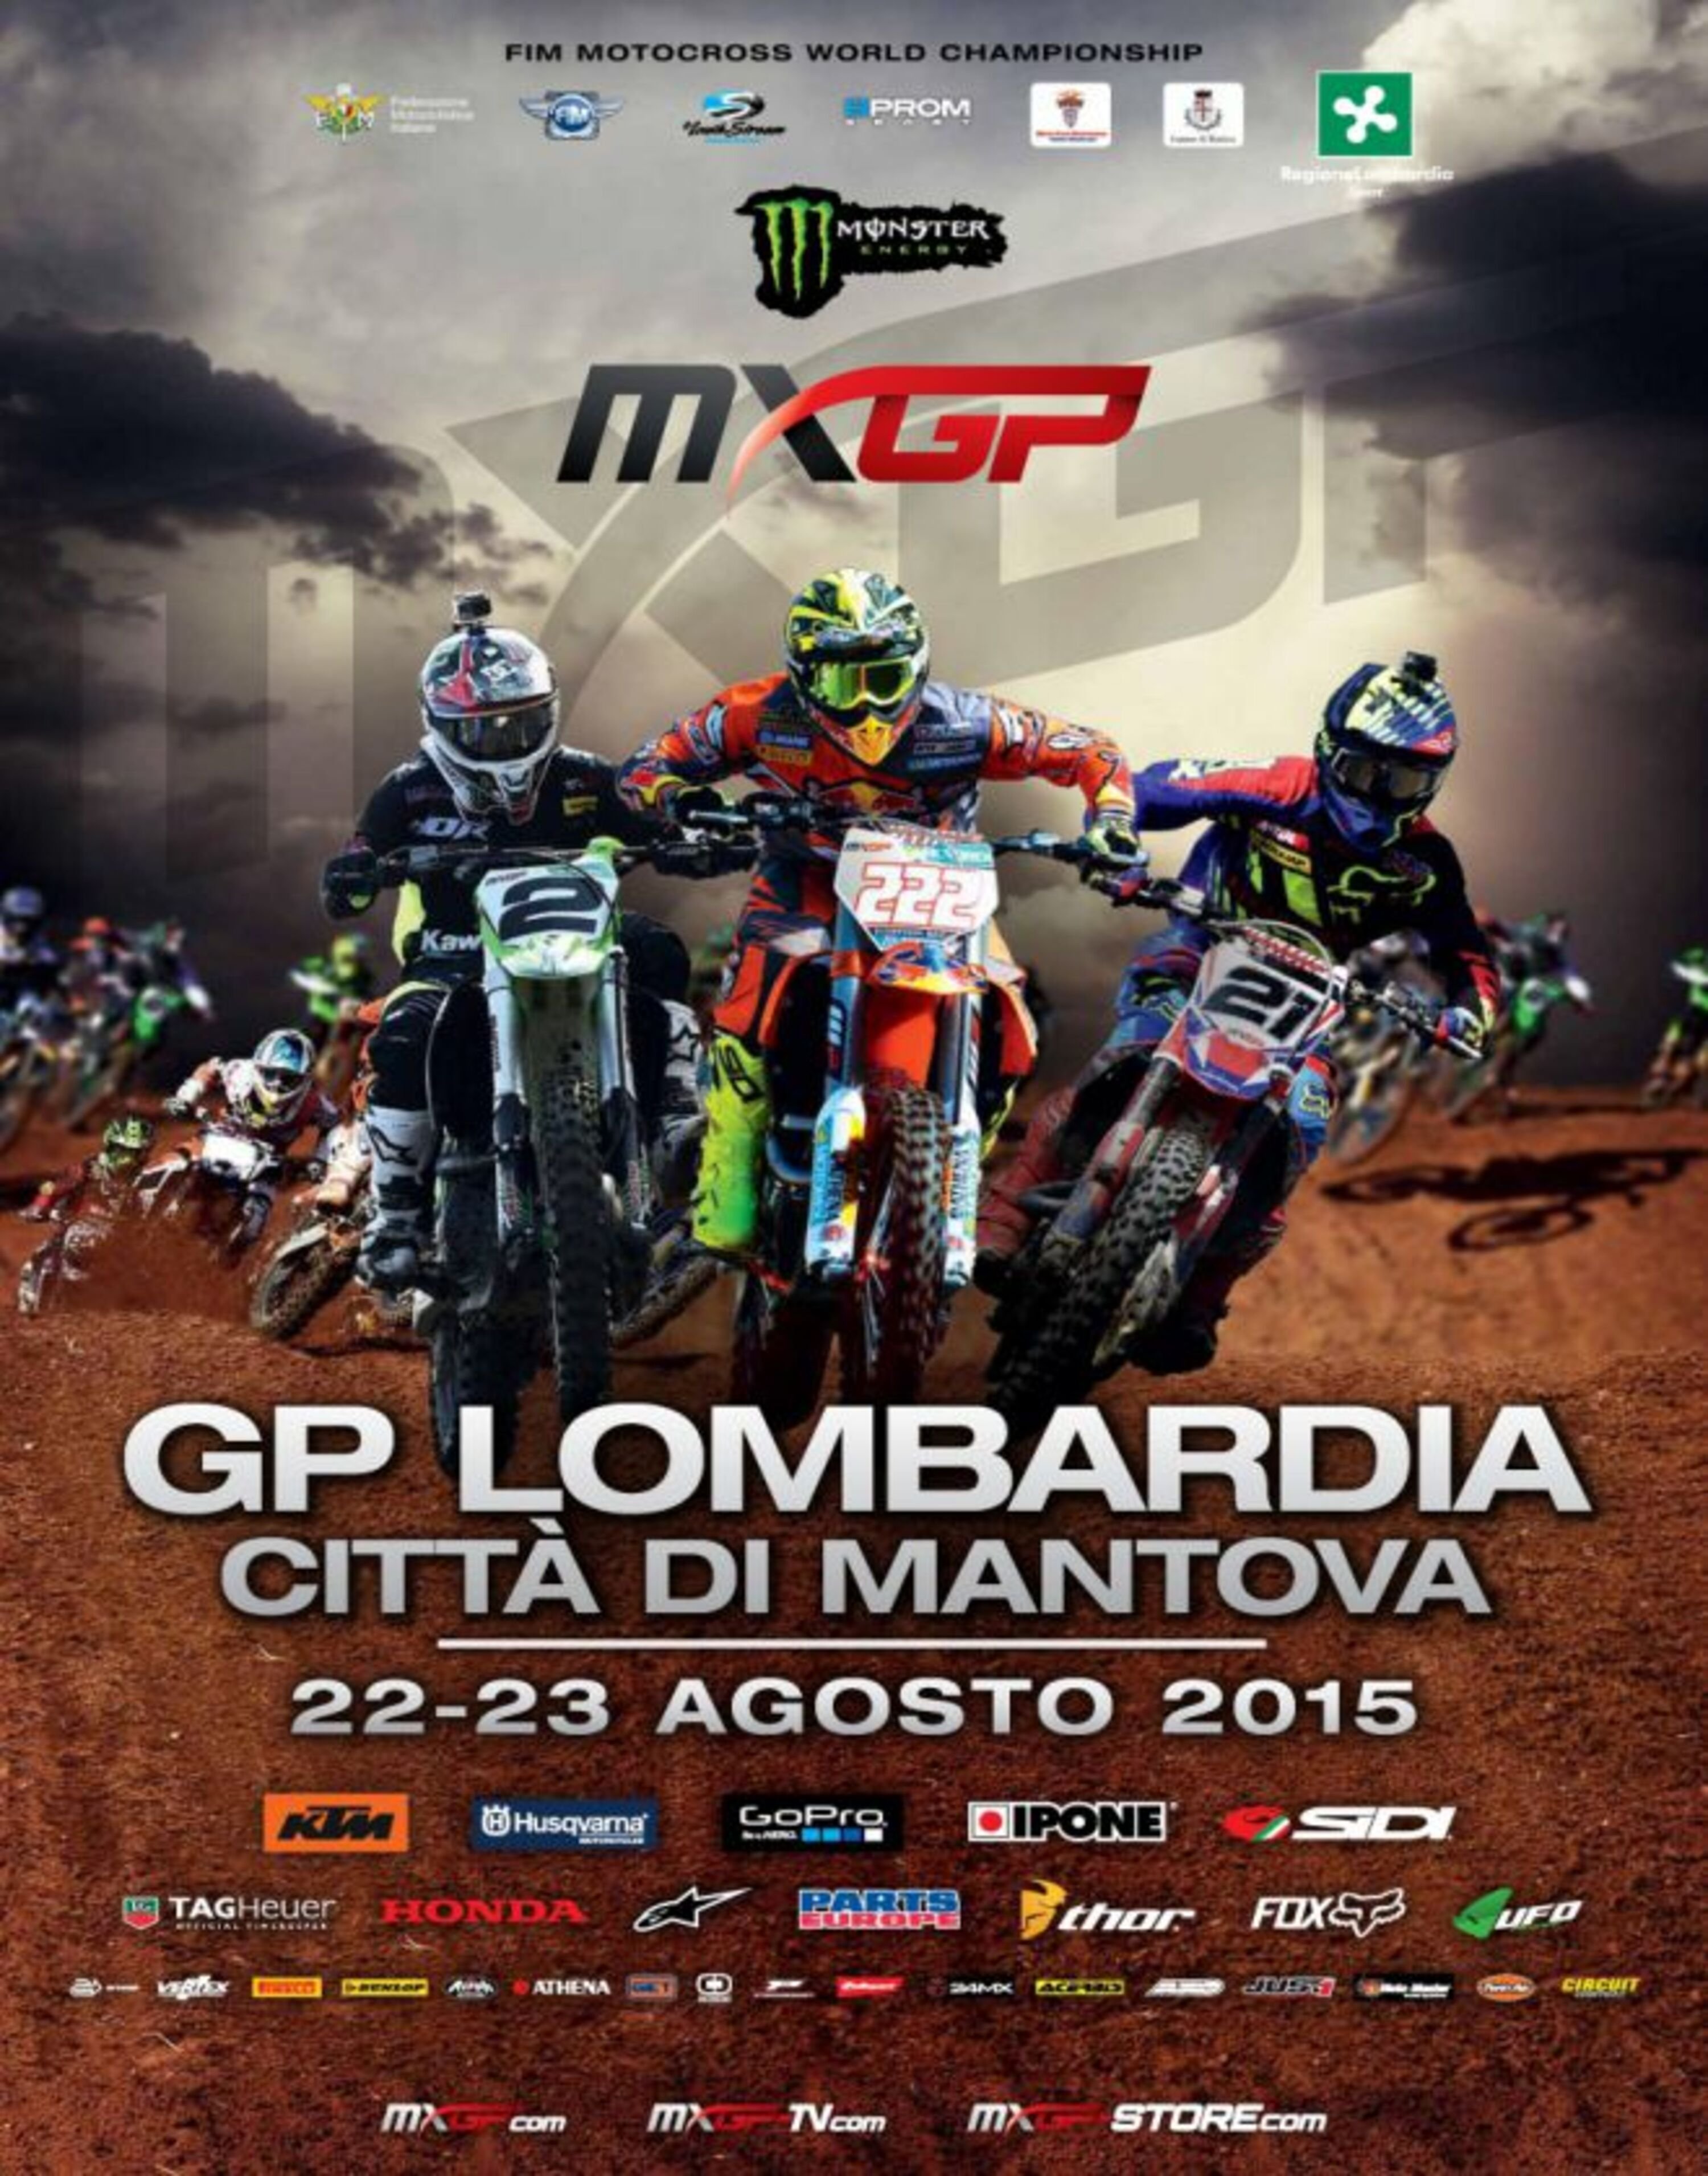 MXGP 2015 a Mantova. Info orari, biglietti, prezzi e prenotazioni online